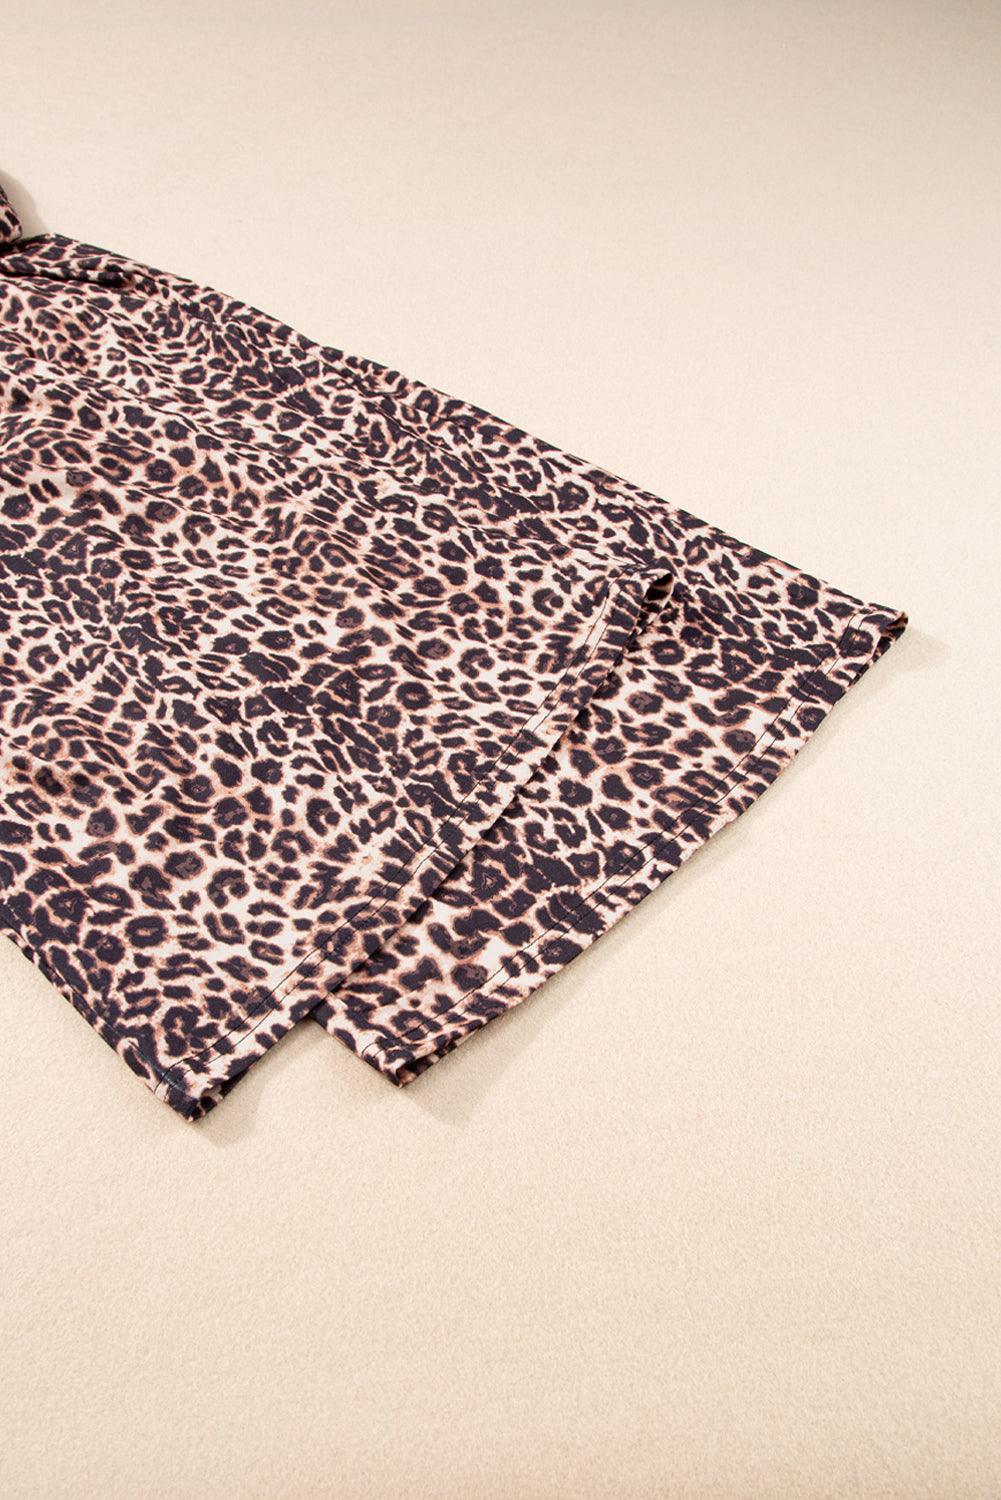 Boho Hawaiian Wide Leg Pants Leopard Pattern for Women